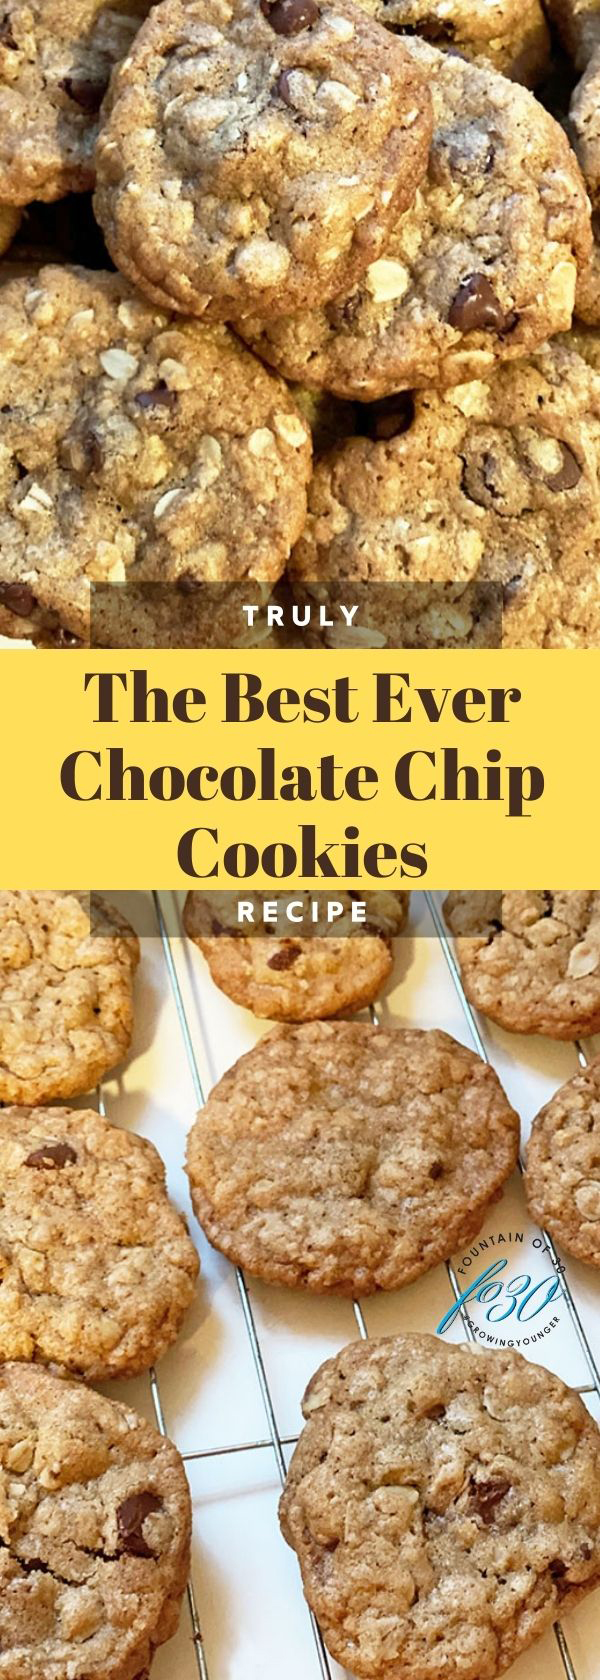 best chocolate chip cookies fountainof30